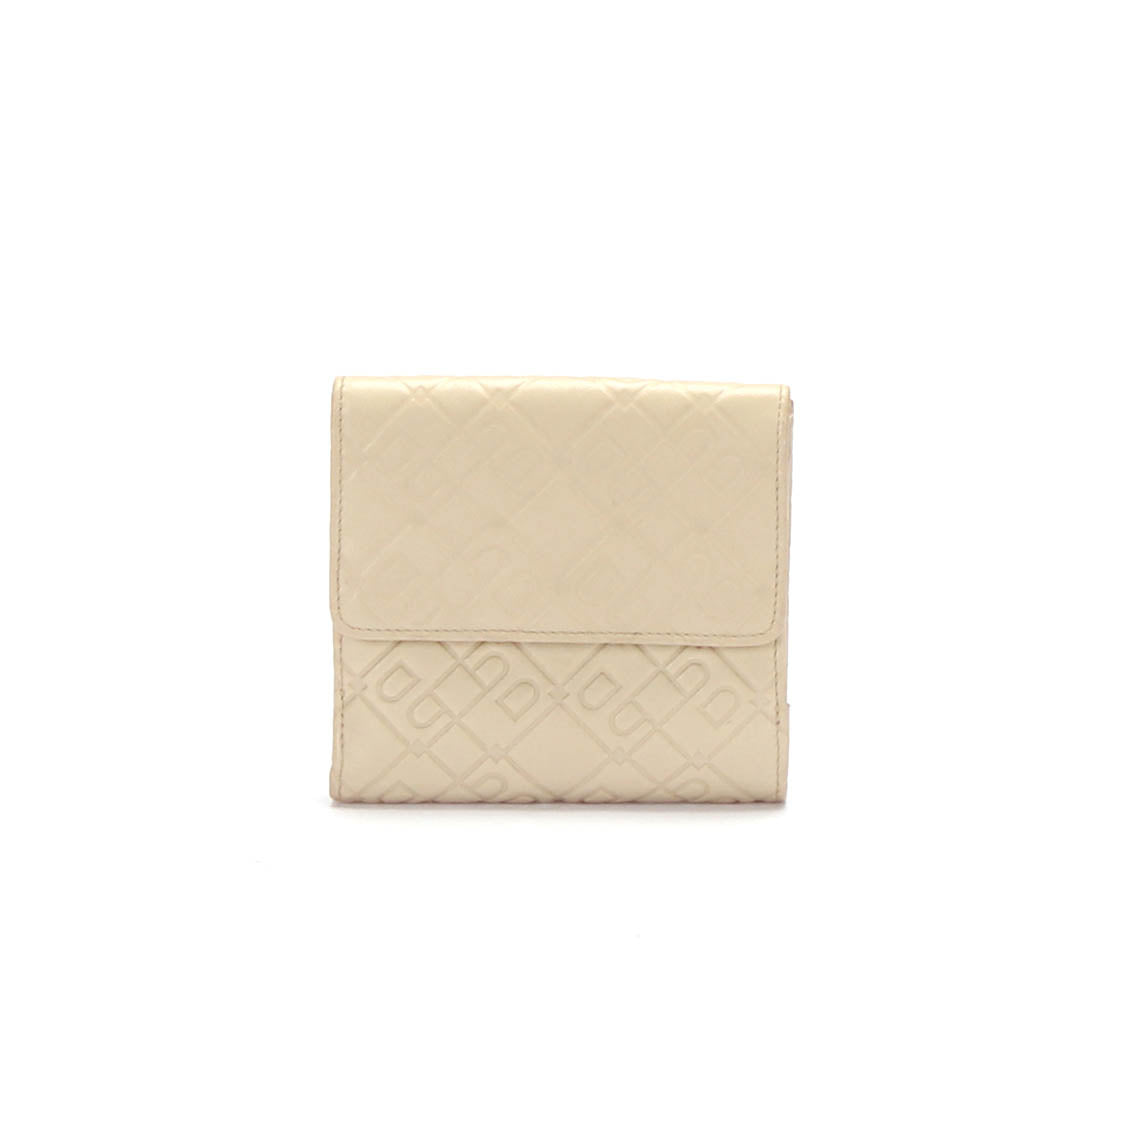 エンボス加工された革の小さな財布